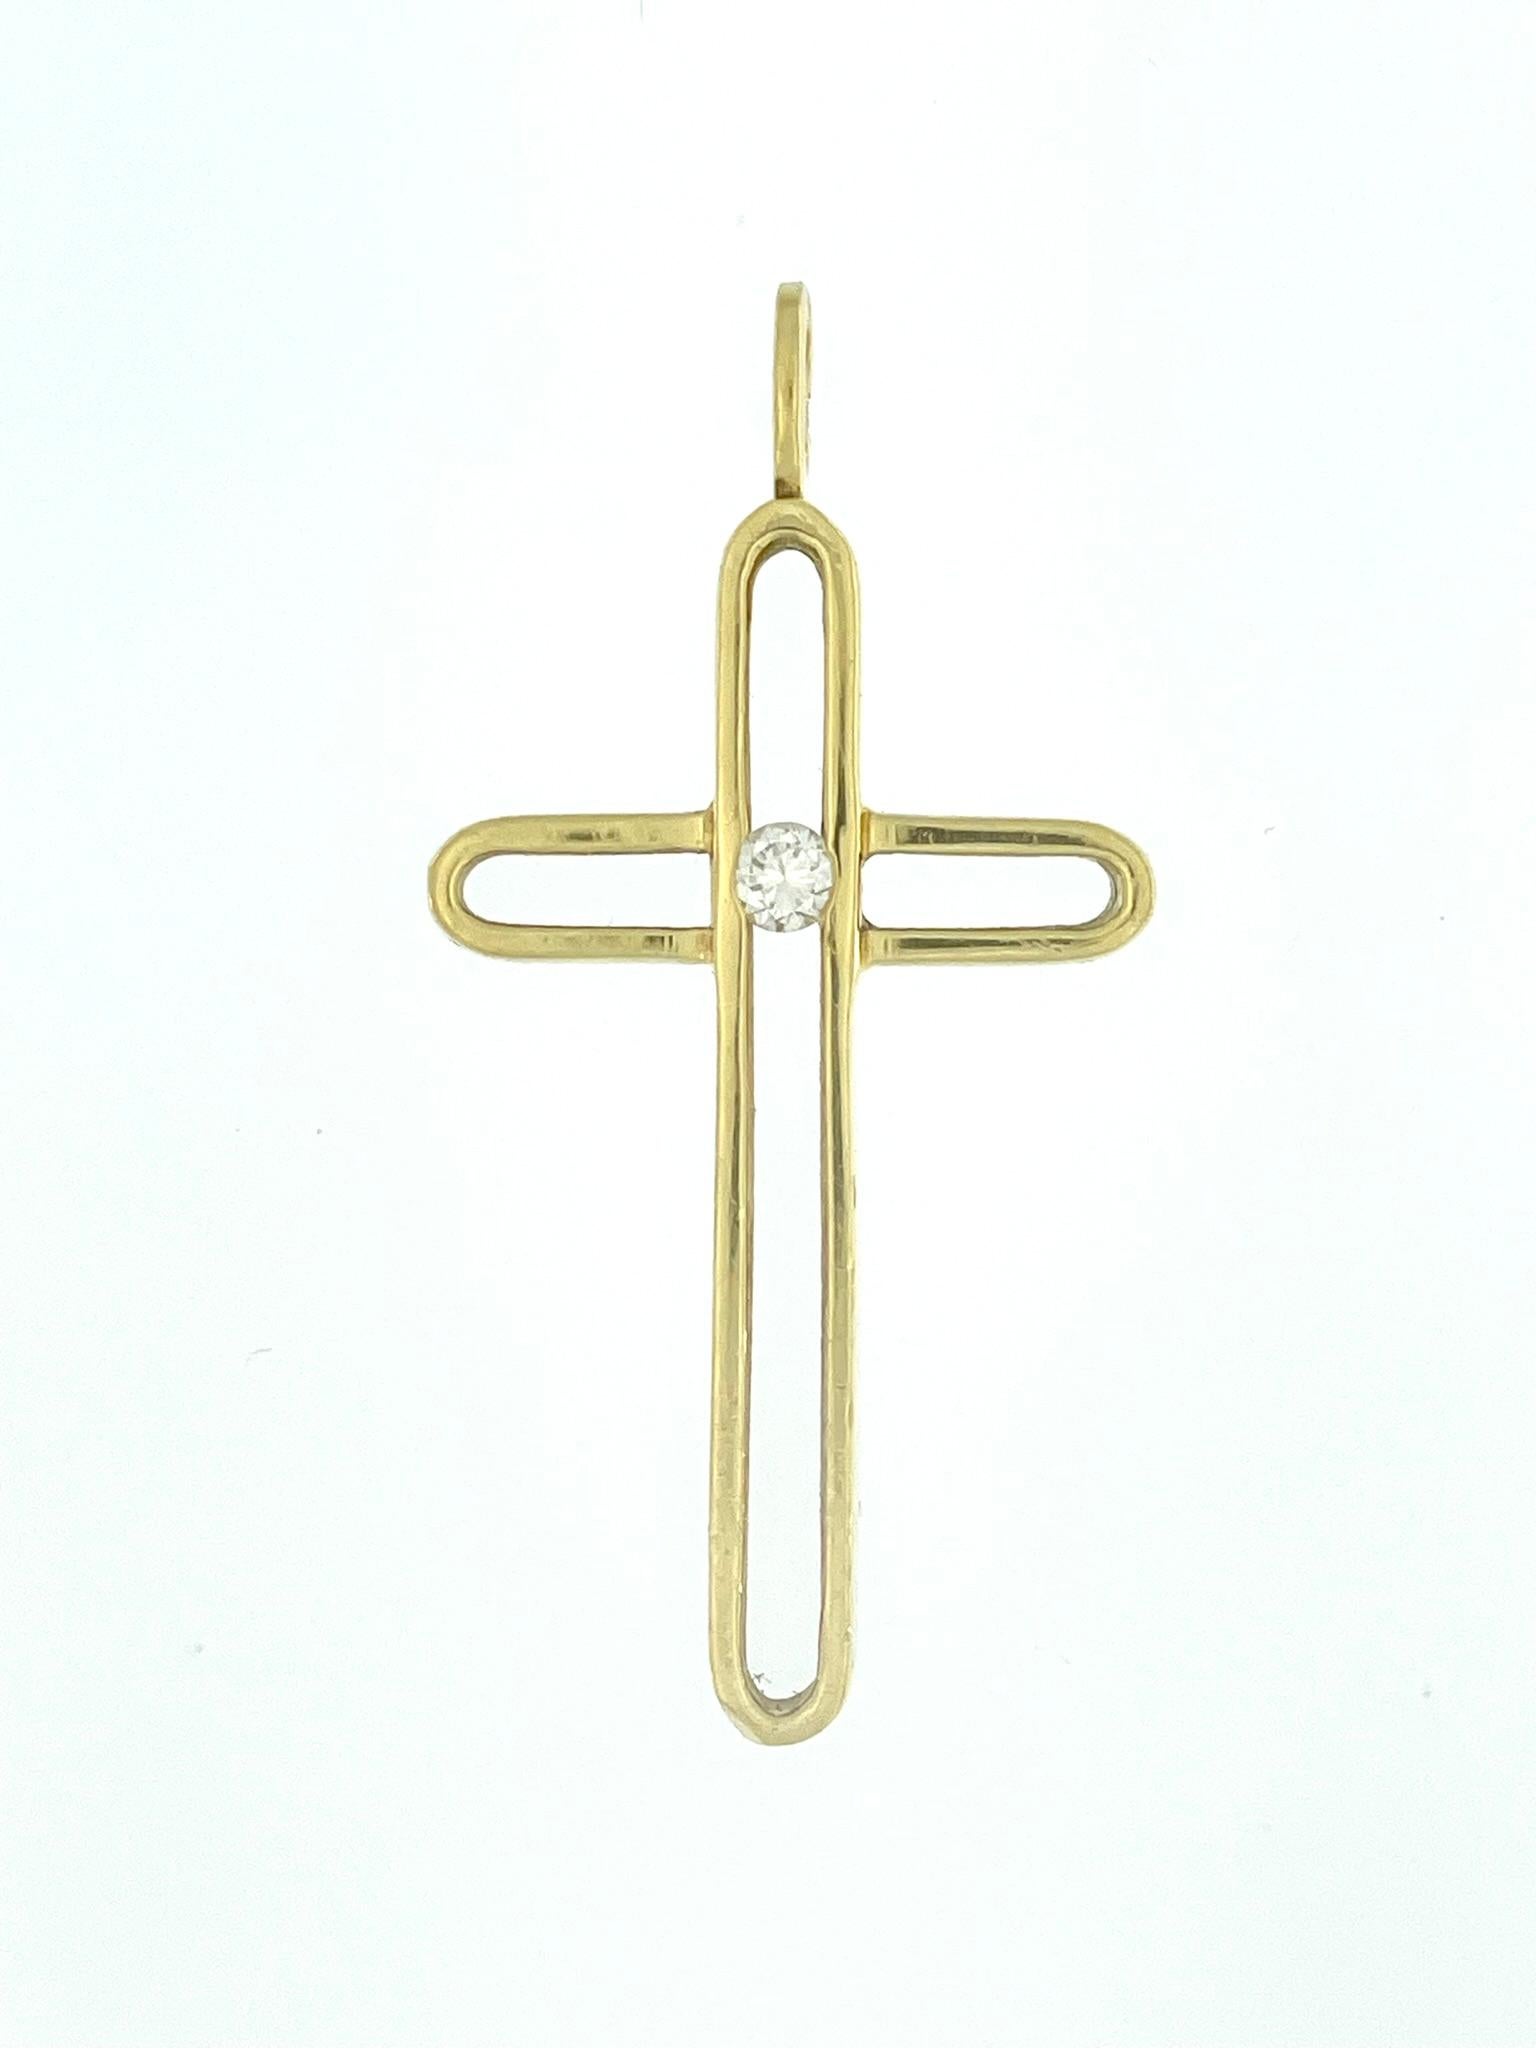 La croix moderne en or jaune 18 carats avec diamants est un pendentif religieux contemporain et sophistiqué qui allie harmonieusement un symbolisme intemporel à un design luxueux. Le point focal de cette croix est un diamant central, qui ajoute une